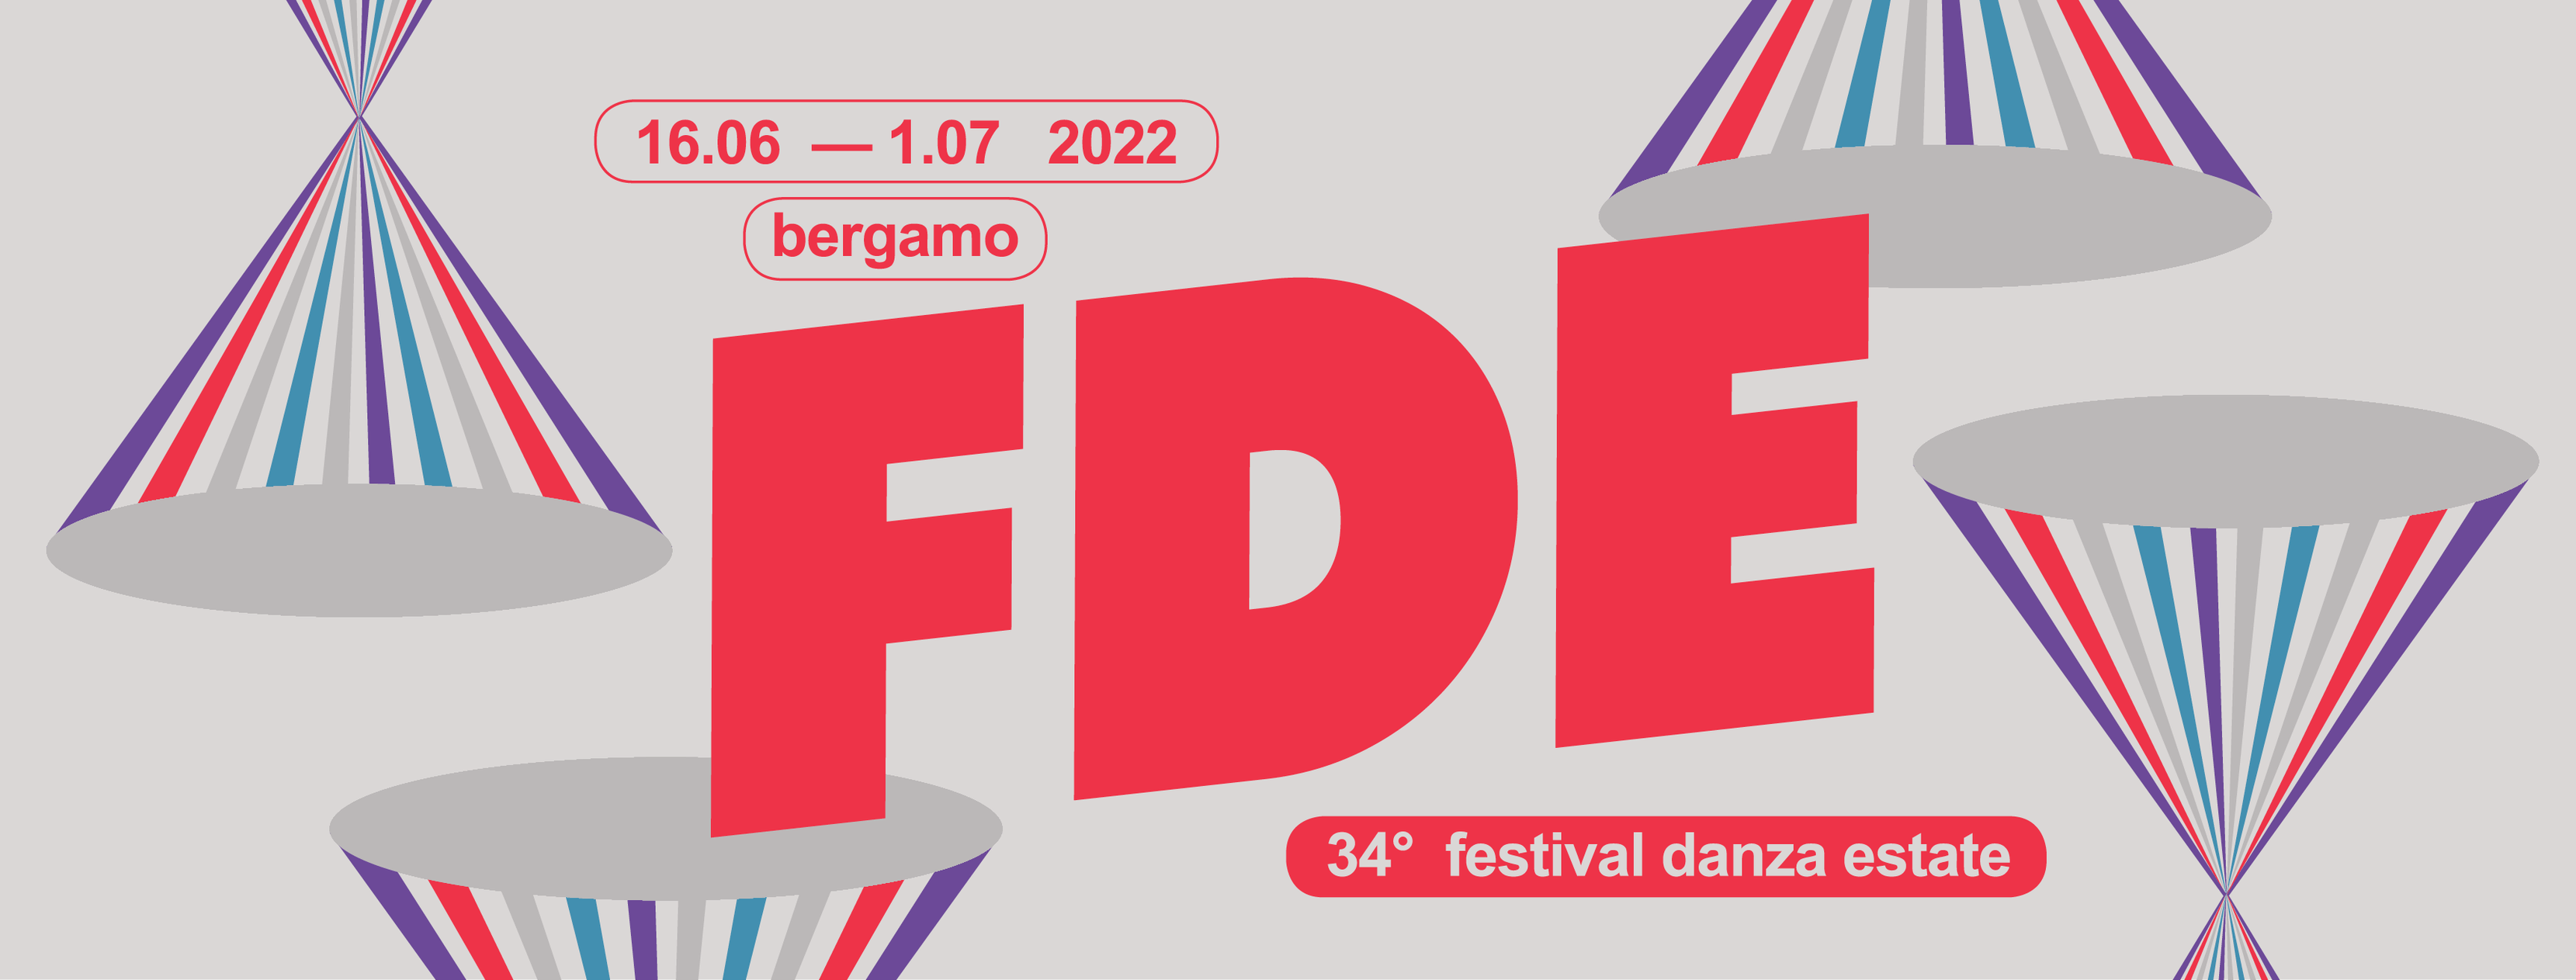 34^ edizione del Festival Danza Estate